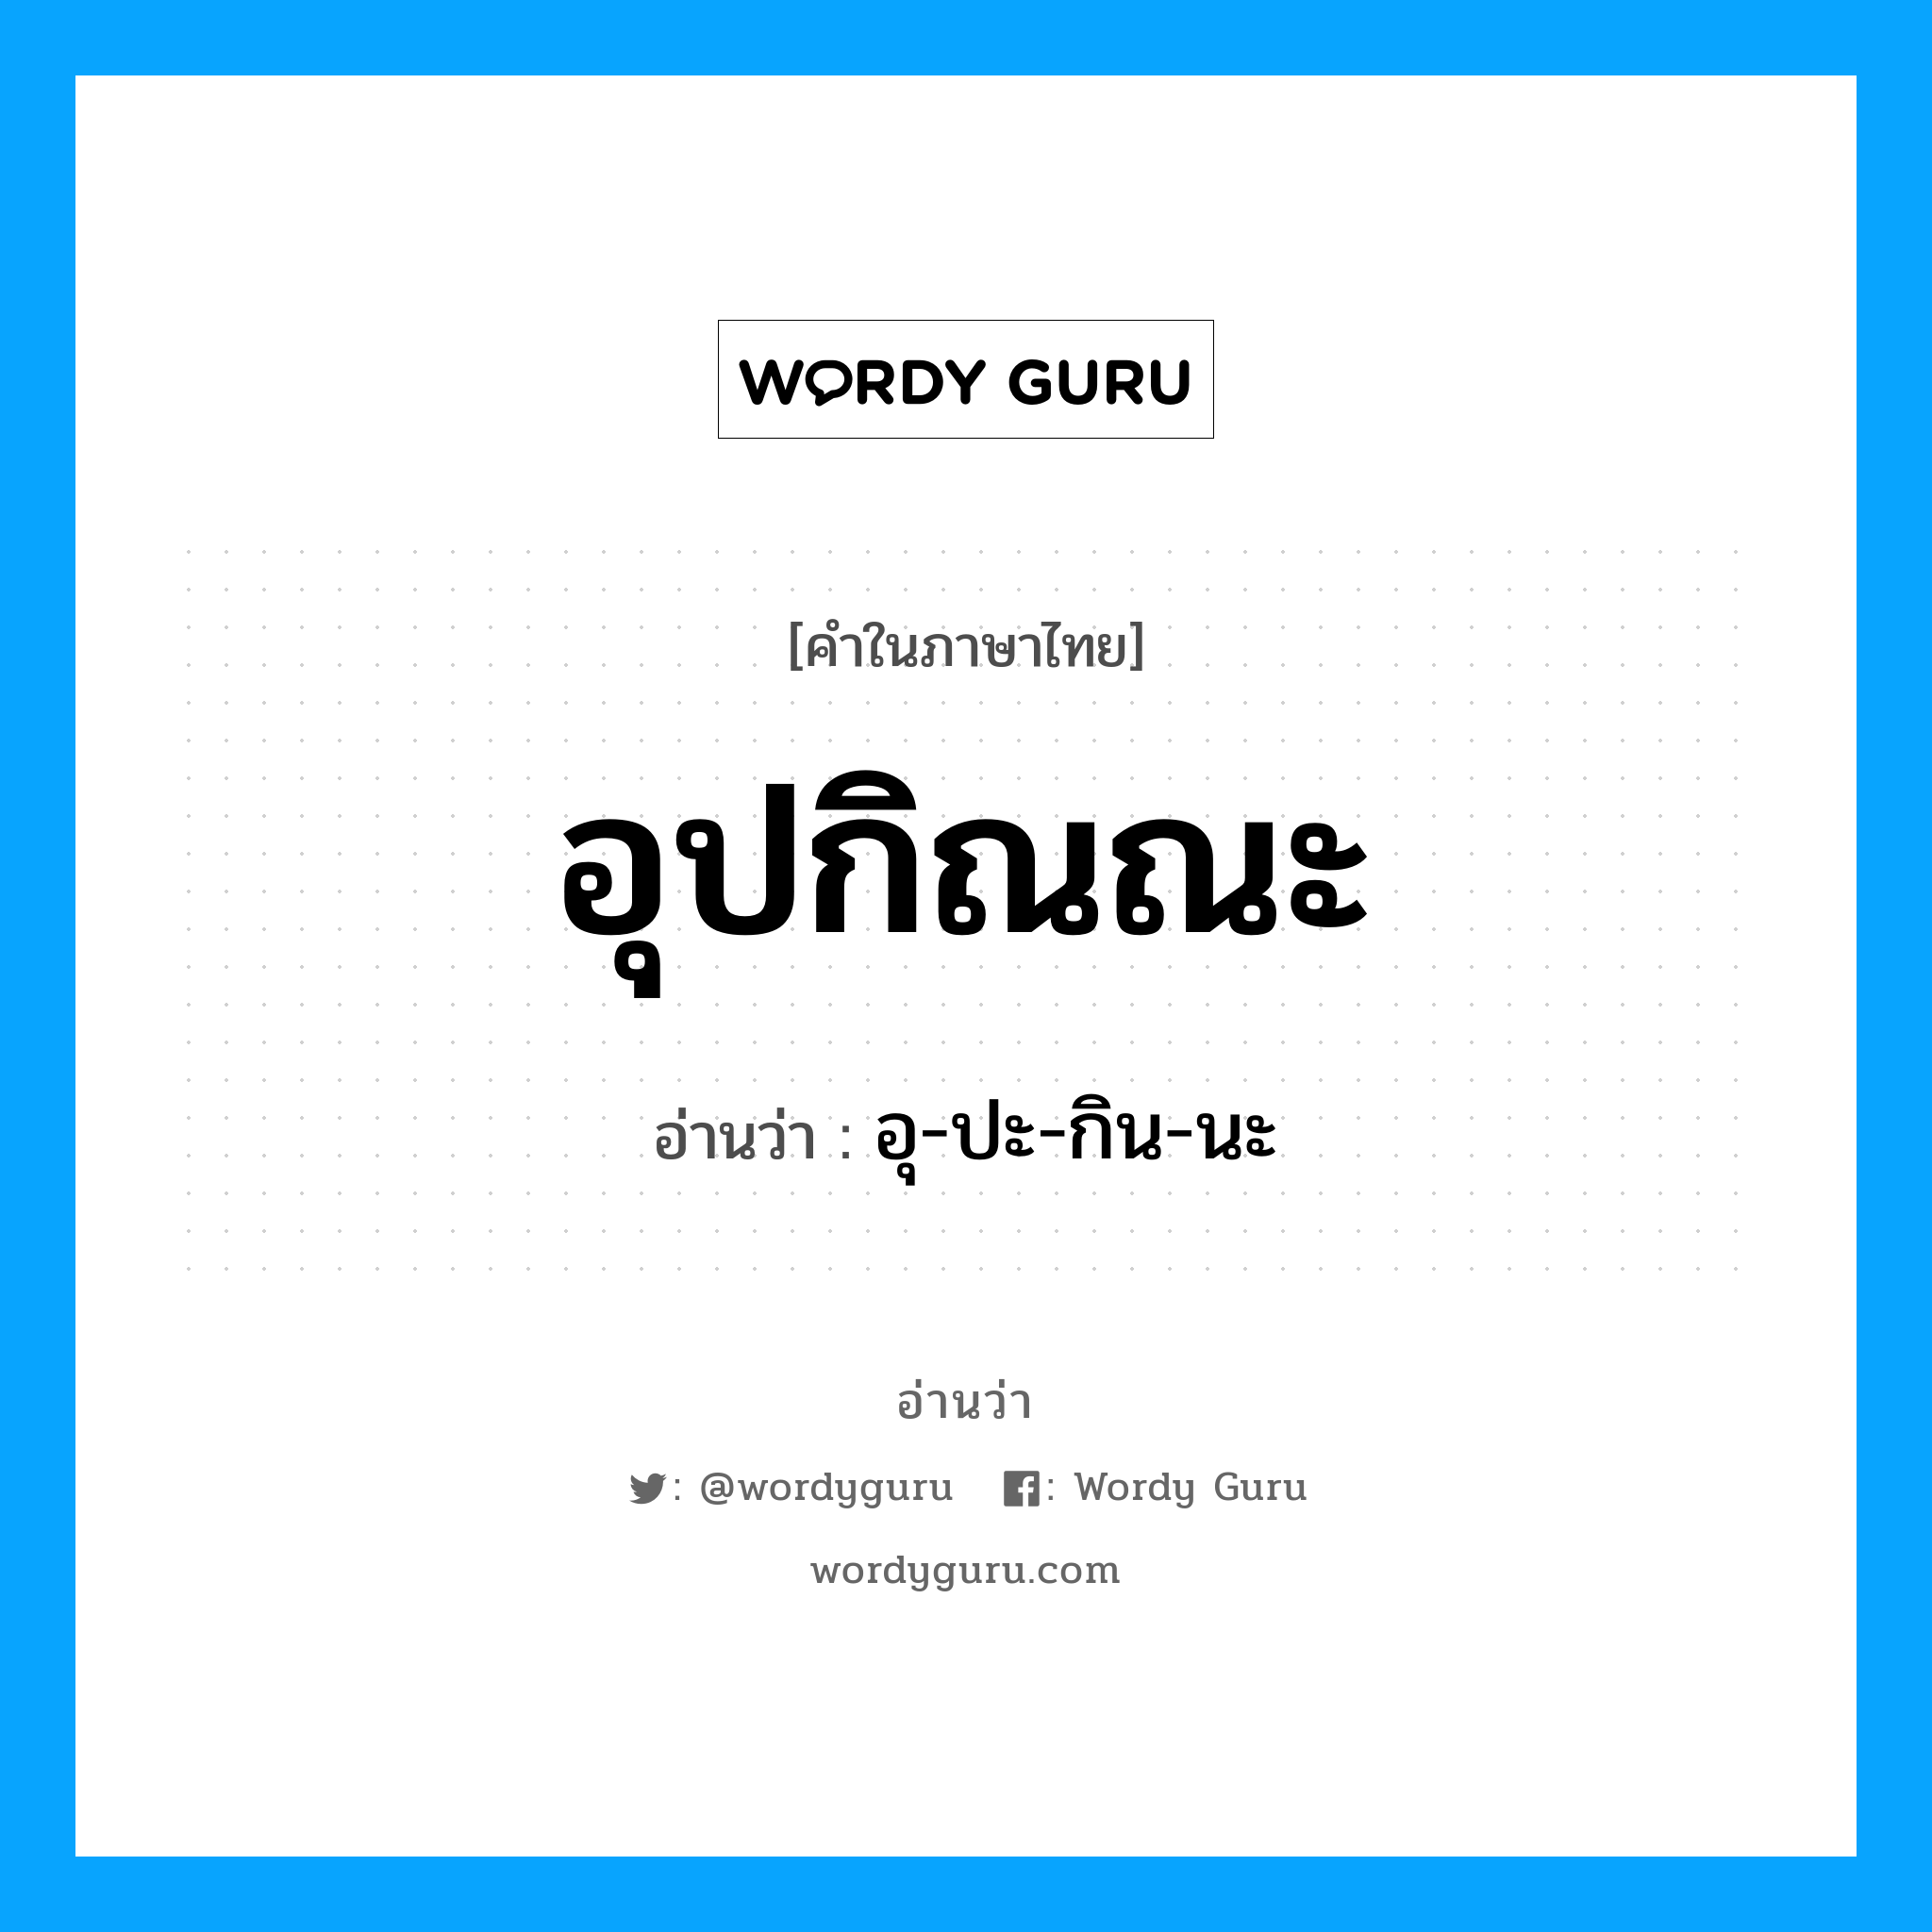 อุ-ปะ-กิน-นะ เป็นคำอ่านของคำไหน?, คำในภาษาไทย อุ-ปะ-กิน-นะ อ่านว่า อุปกิณณะ